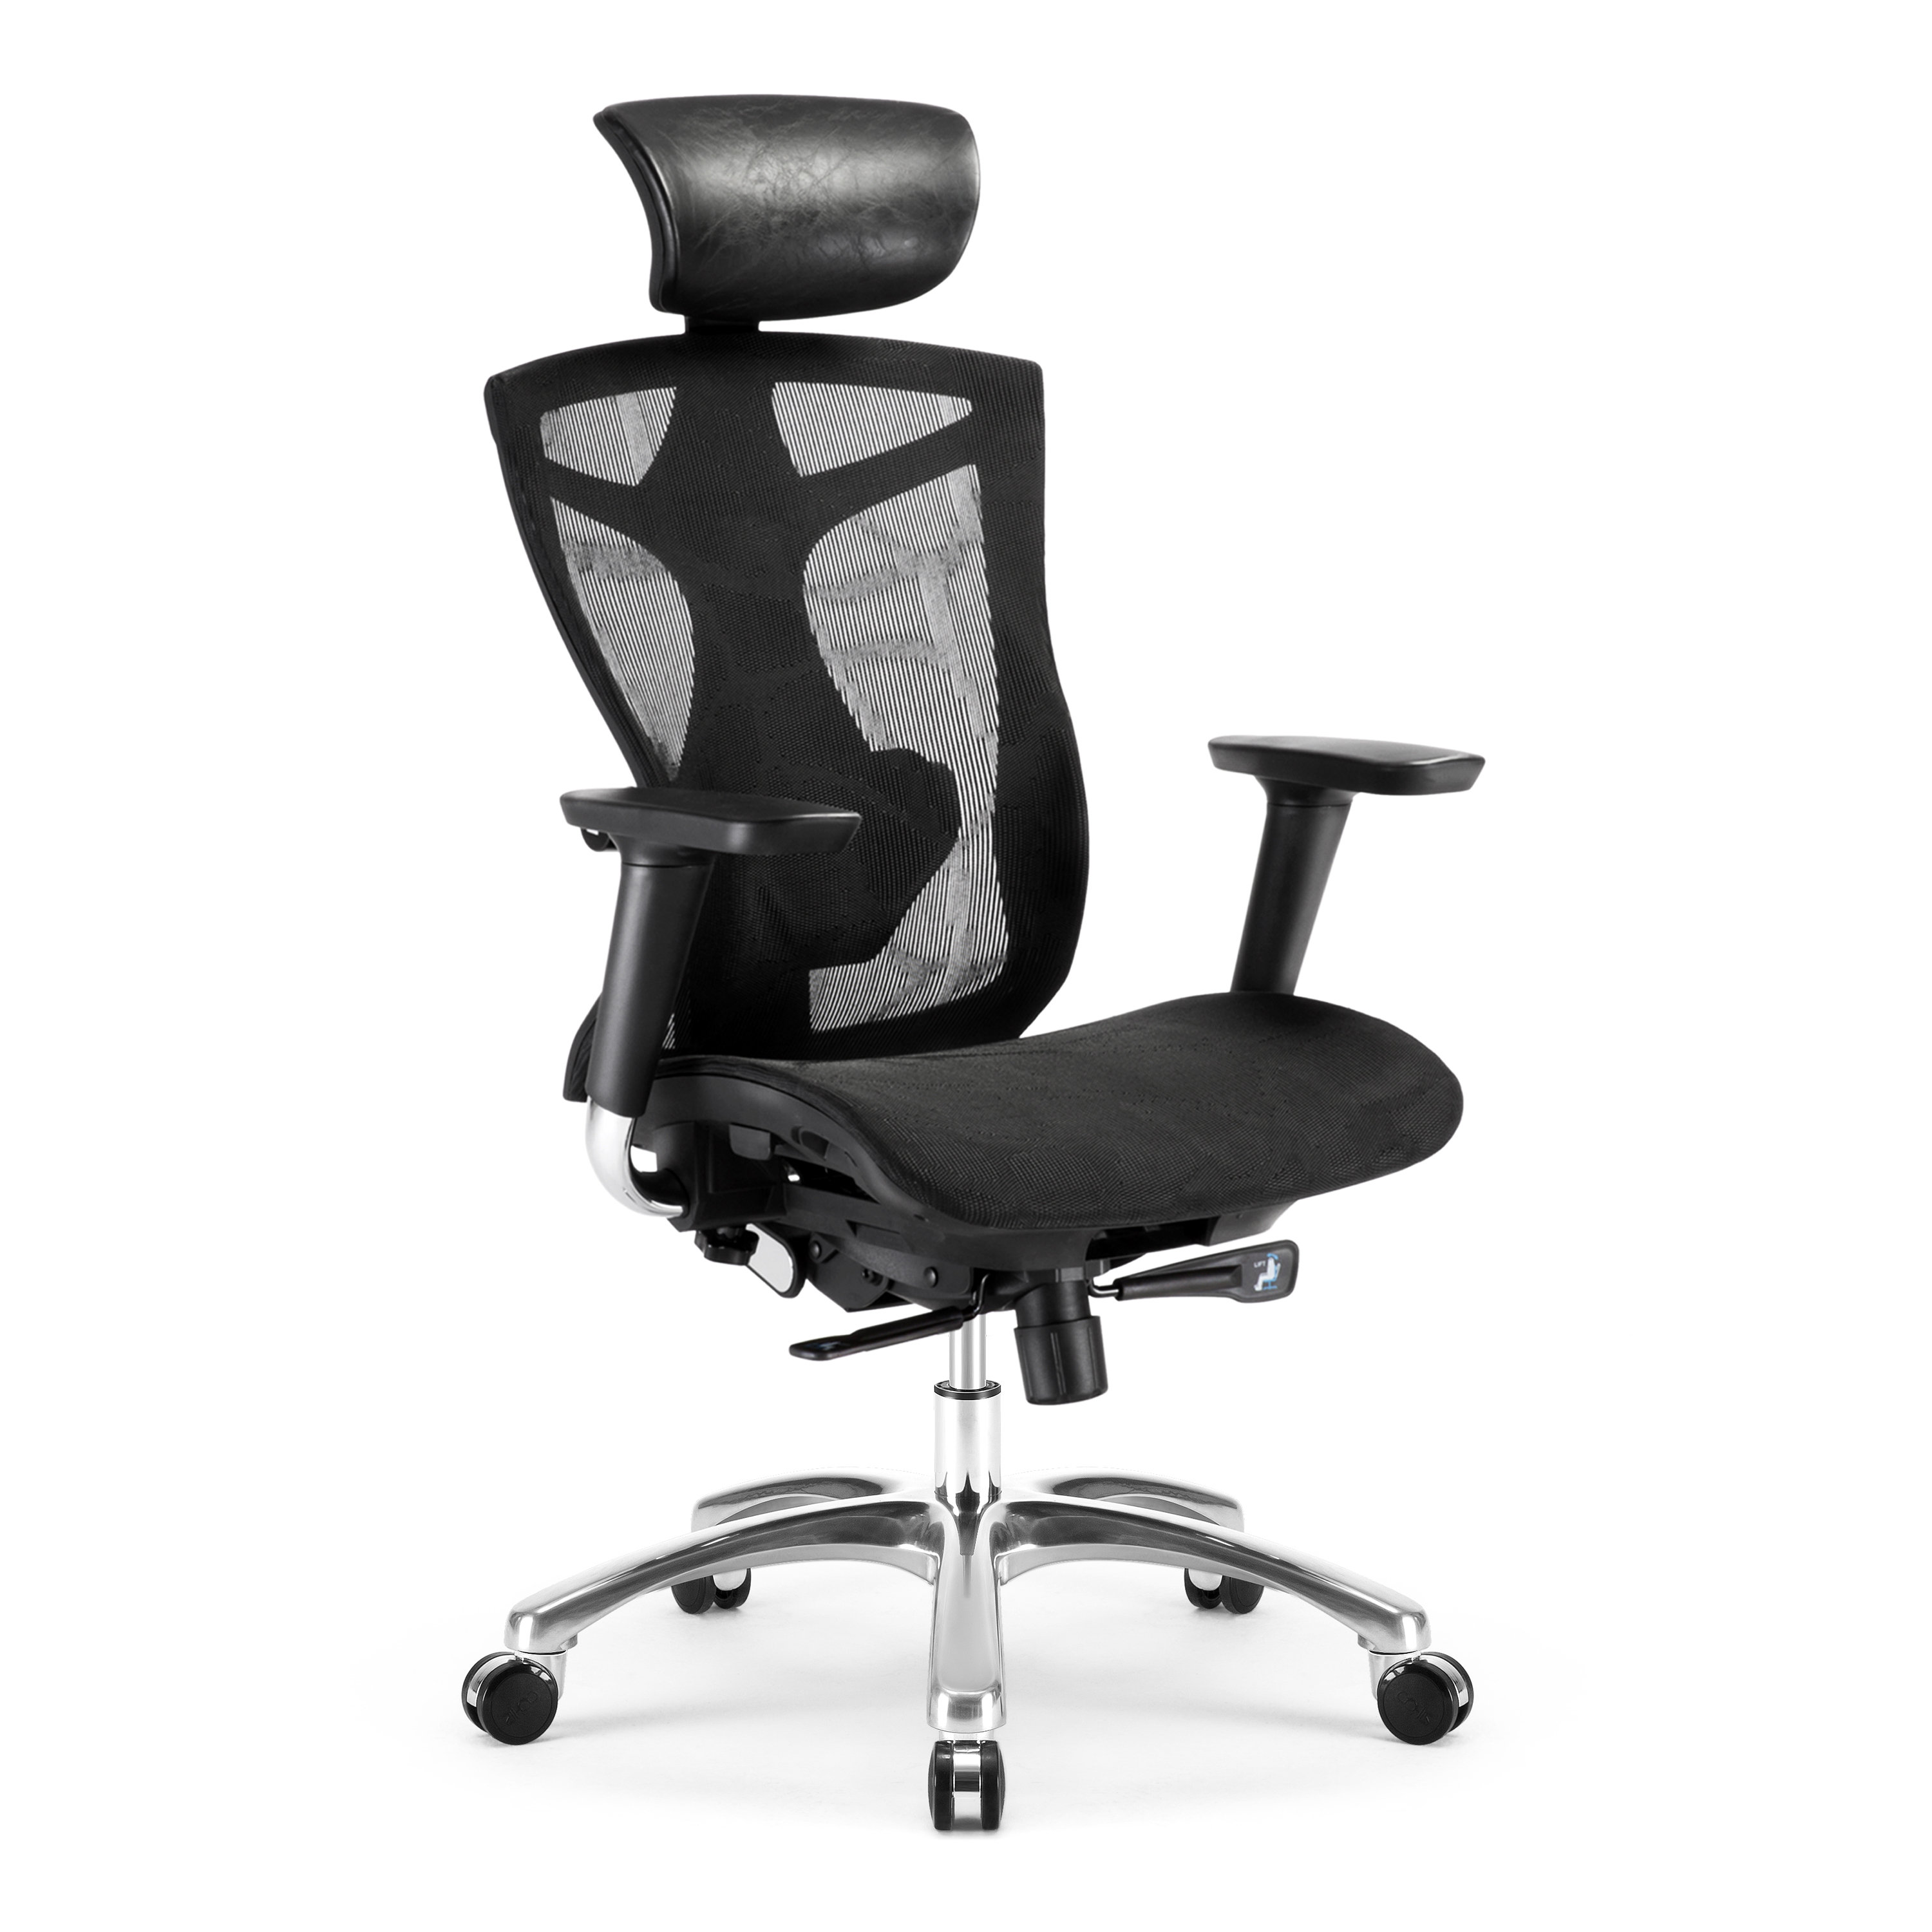 https://assets.wfcdn.com/im/84785514/compr-r85/2189/218904174/juhel-ergonomic-office-computer-chair-depth-height-adjustable-mesh-4d-arms-2-way-lumbar-support.jpg